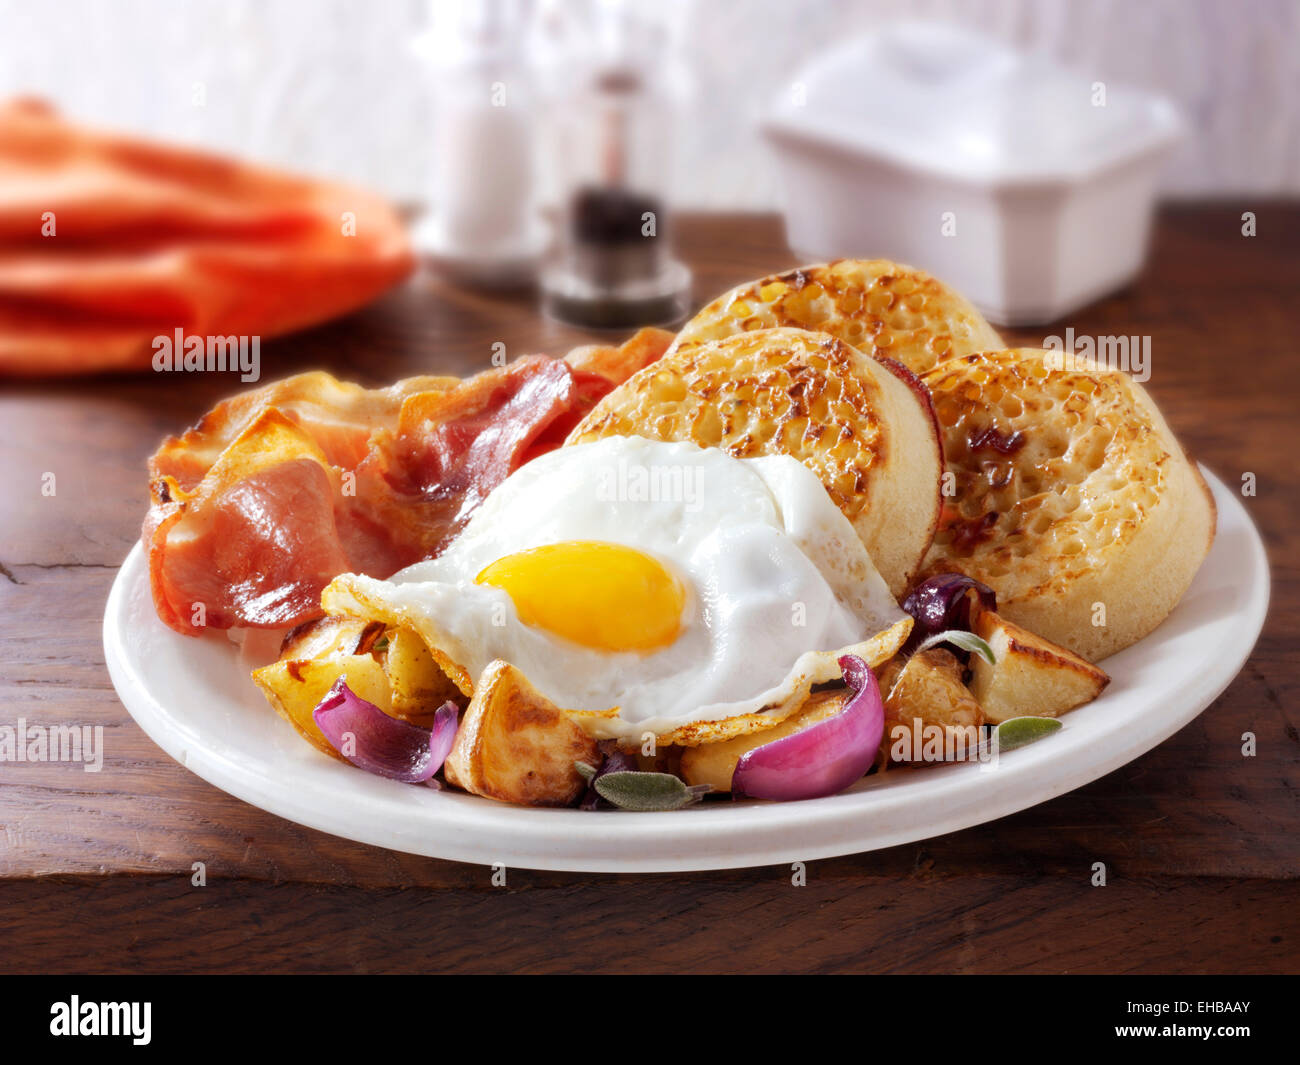 Desayuno inglés completo con crumpets, servido en una placa blanca en un ajuste de la tabla - huevo frito, bacon, patatas salteadas y crumpets Foto de stock